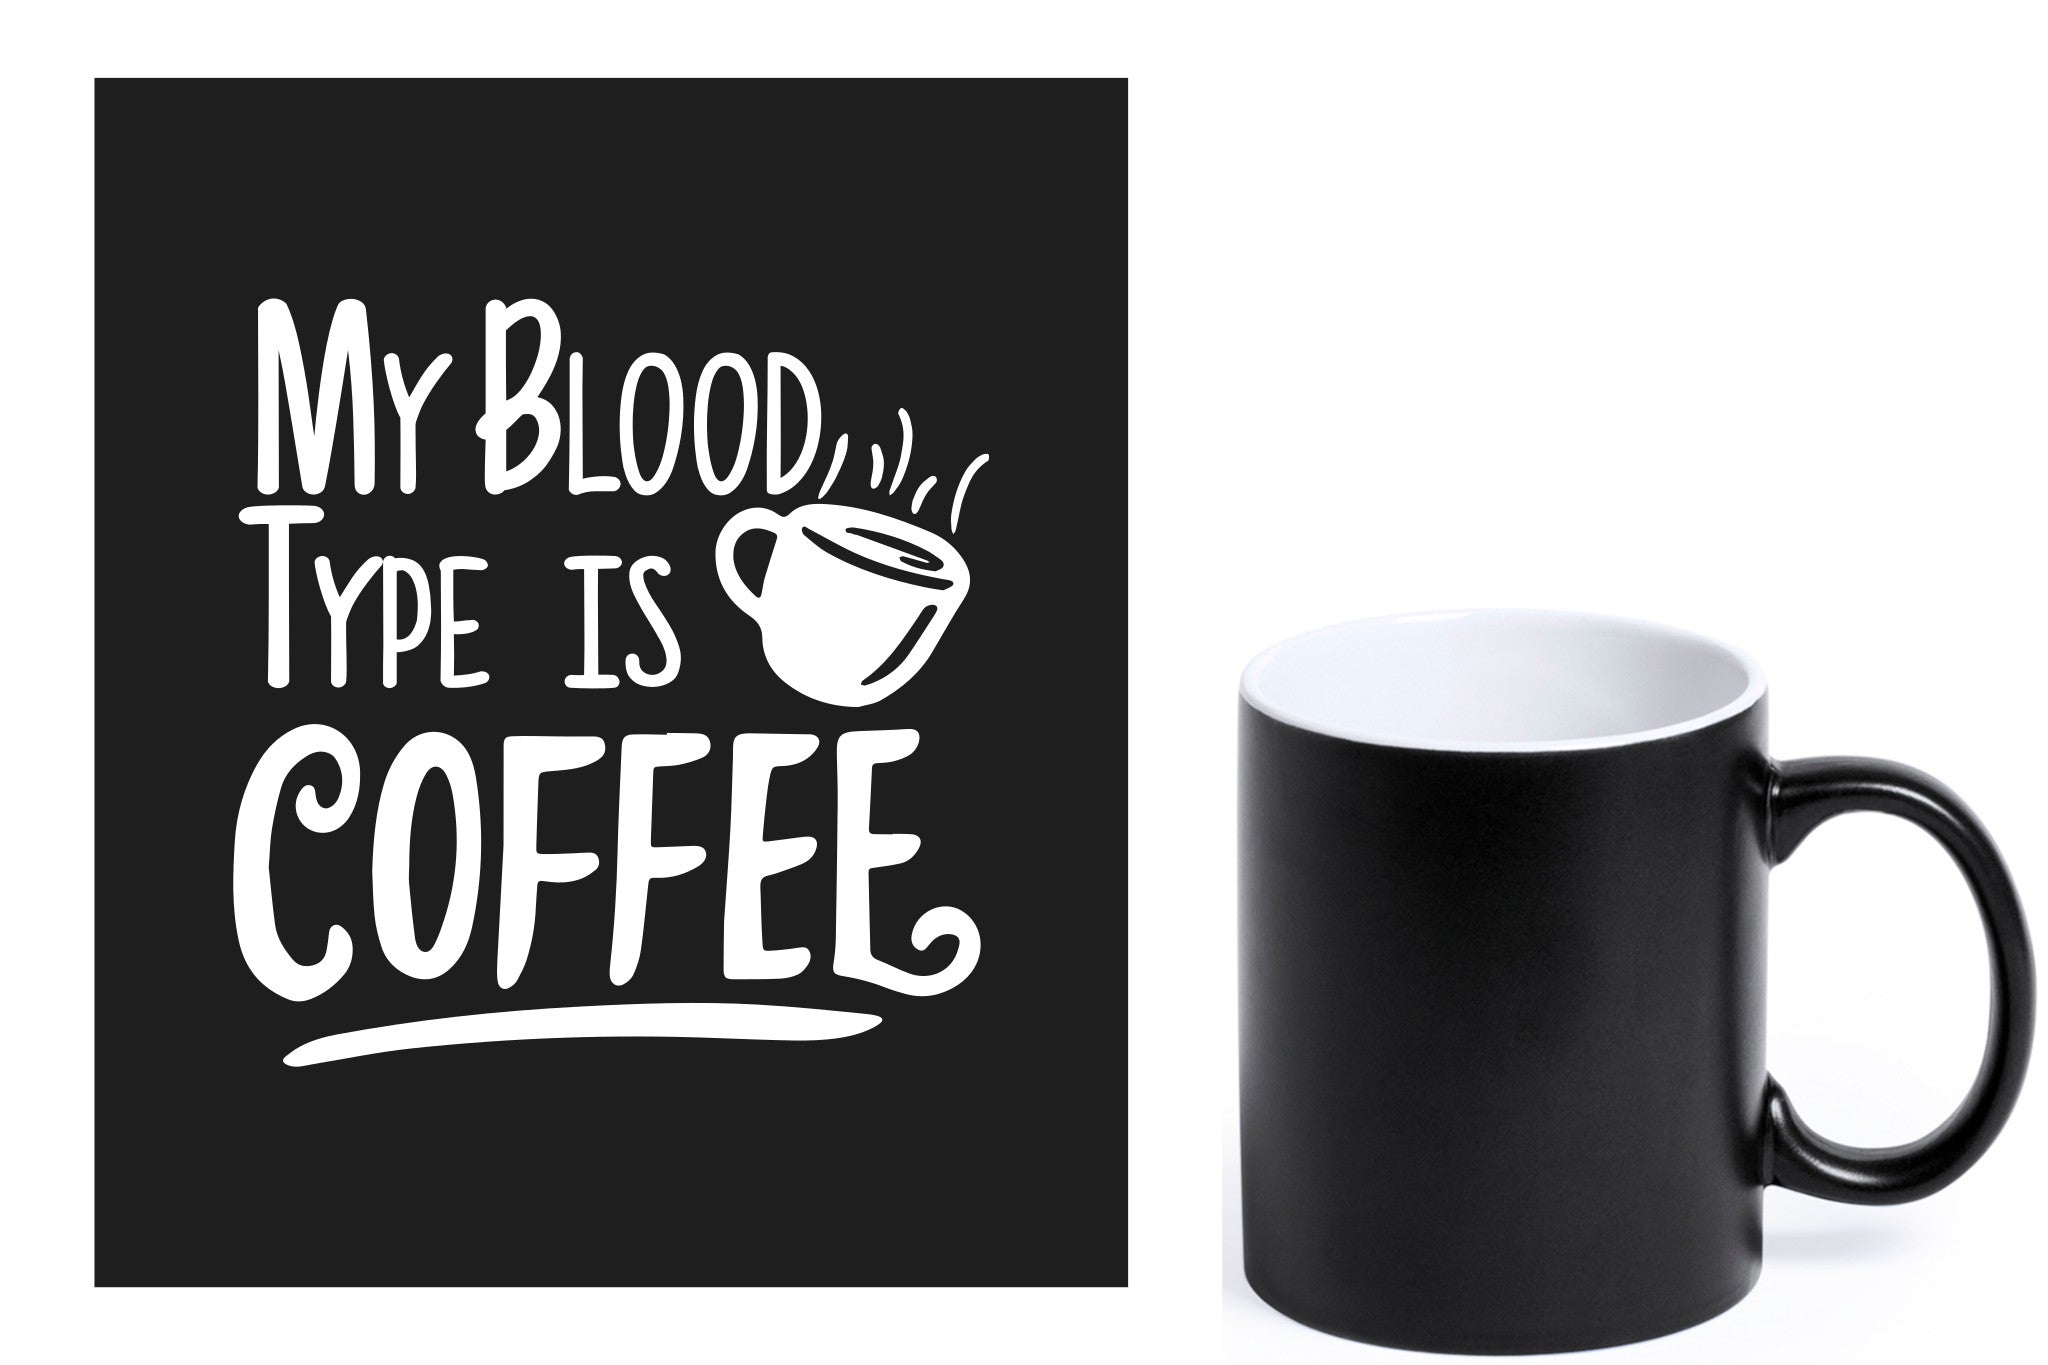 zwarte keramische mok met witte gravure  'My blood type is coffee'.